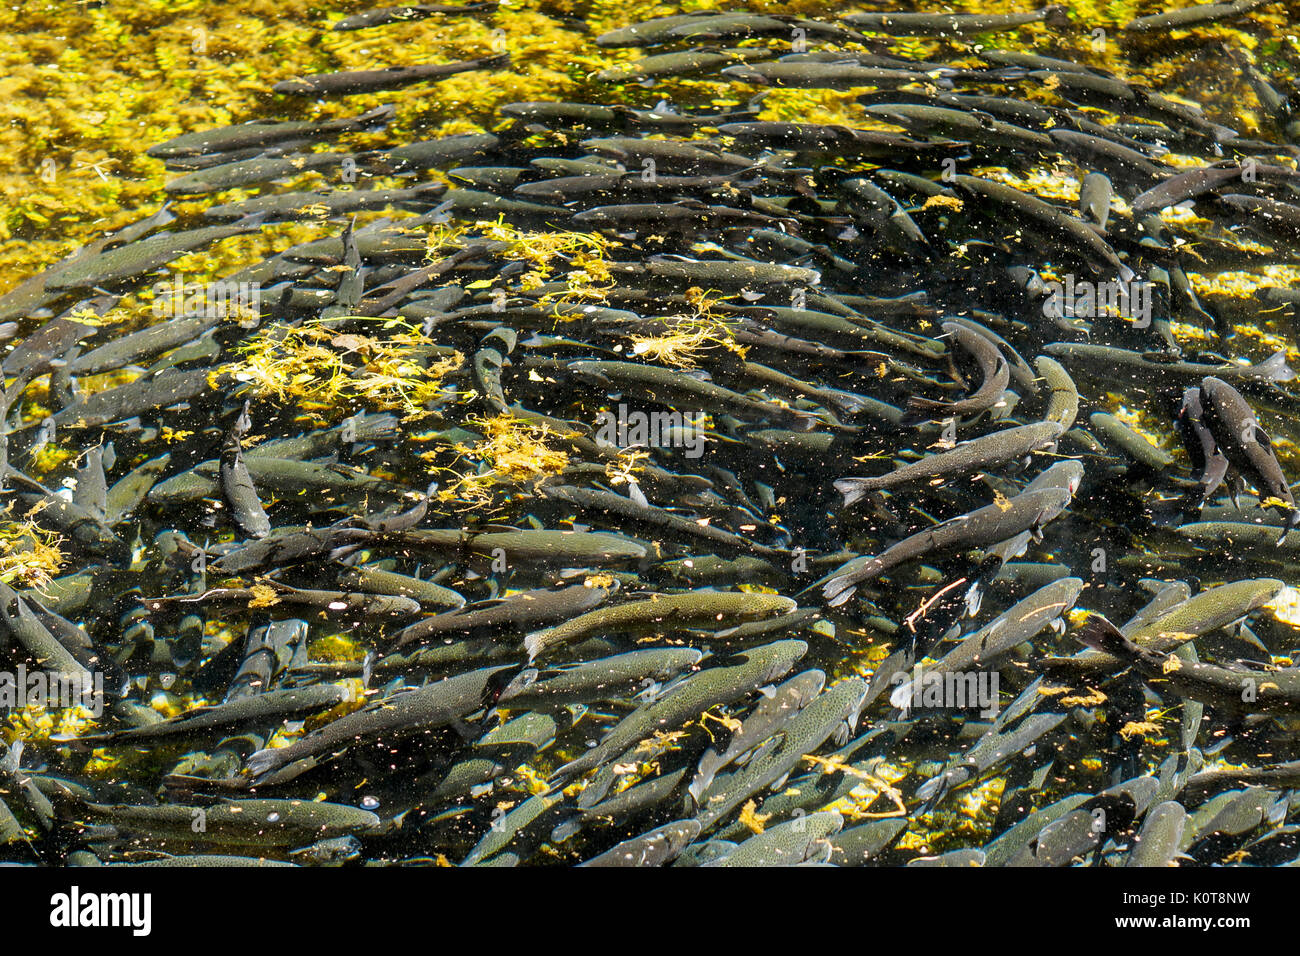 Forellen, die Landwirtschaft in den Fluss Clitunno in Umbrien (Italien). Querformat. Stockfoto